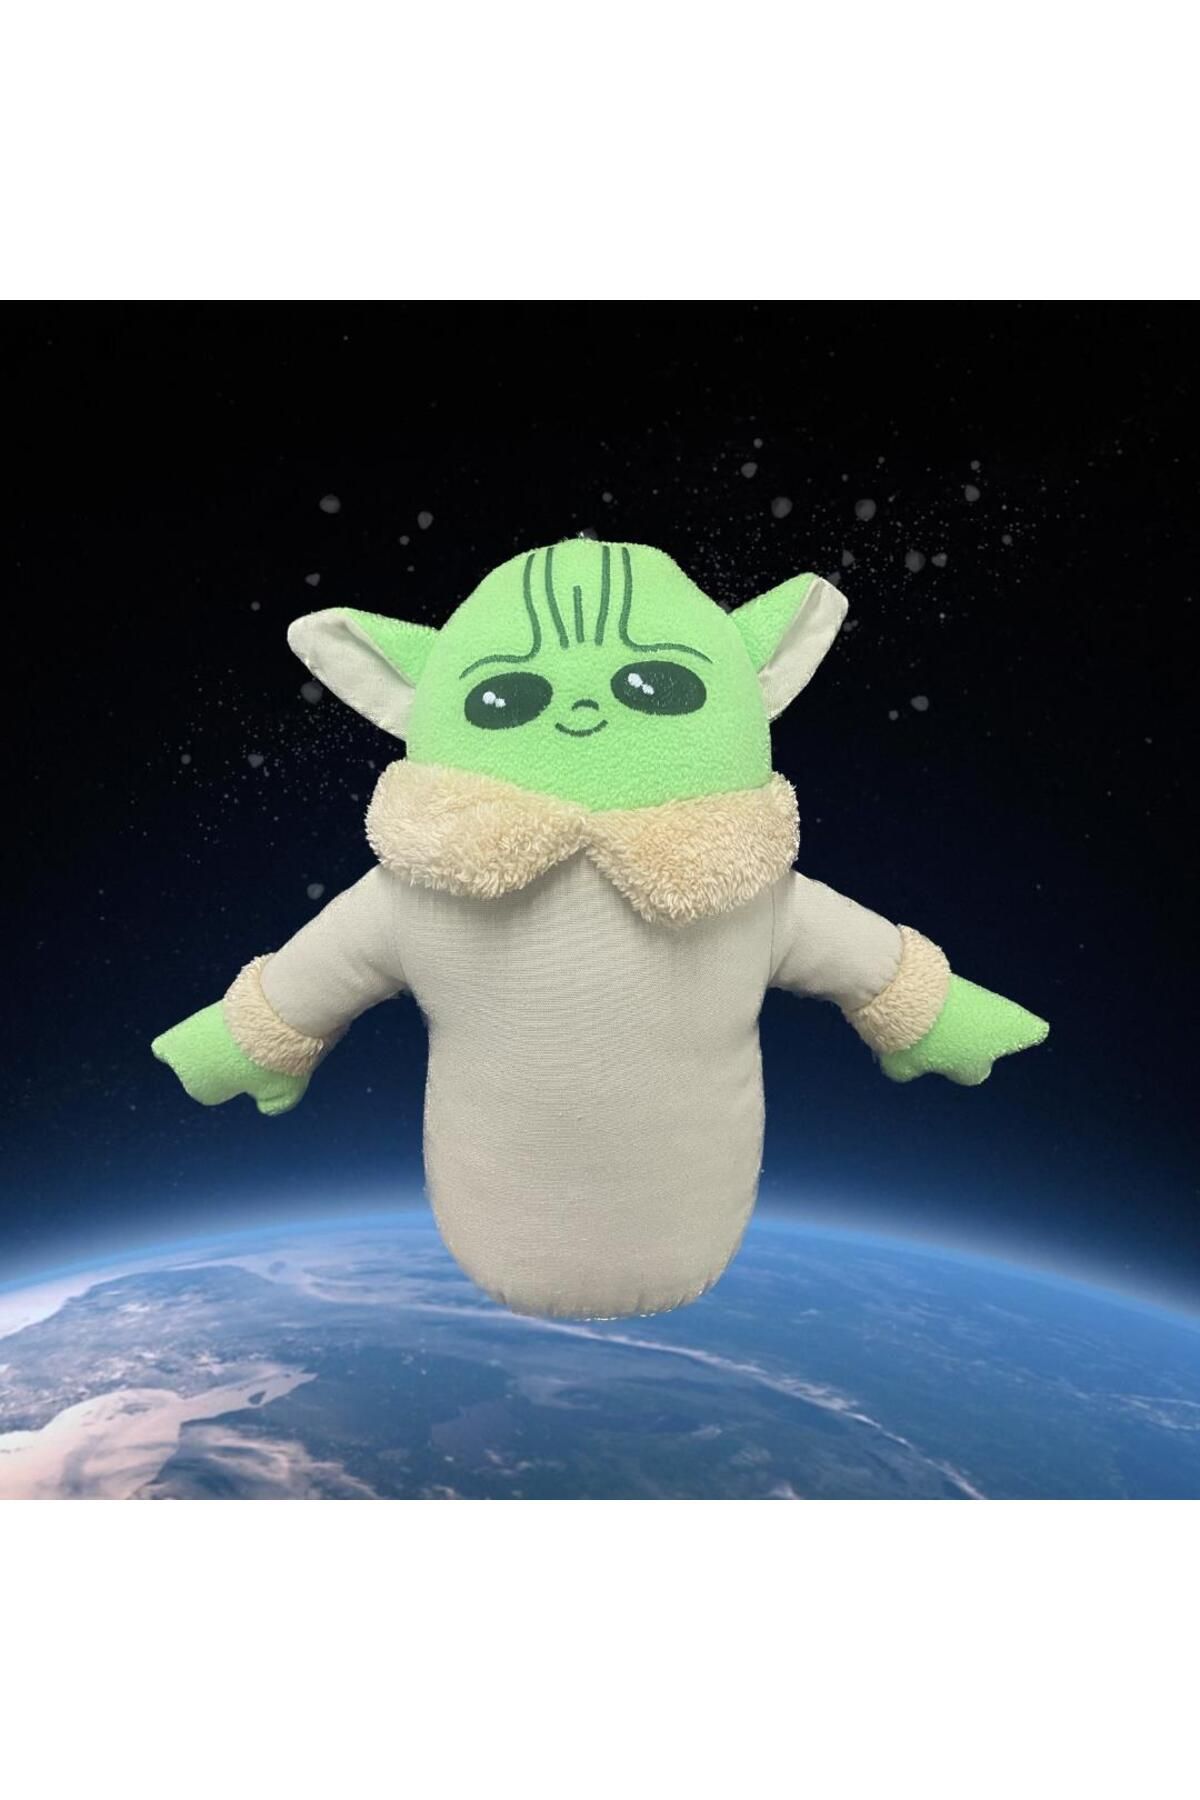 Sole Star Wars Peluş Baby Yoda Karakter Oyuncak 30 Cm - Premium Koleksiyon Hediyelik Peluş